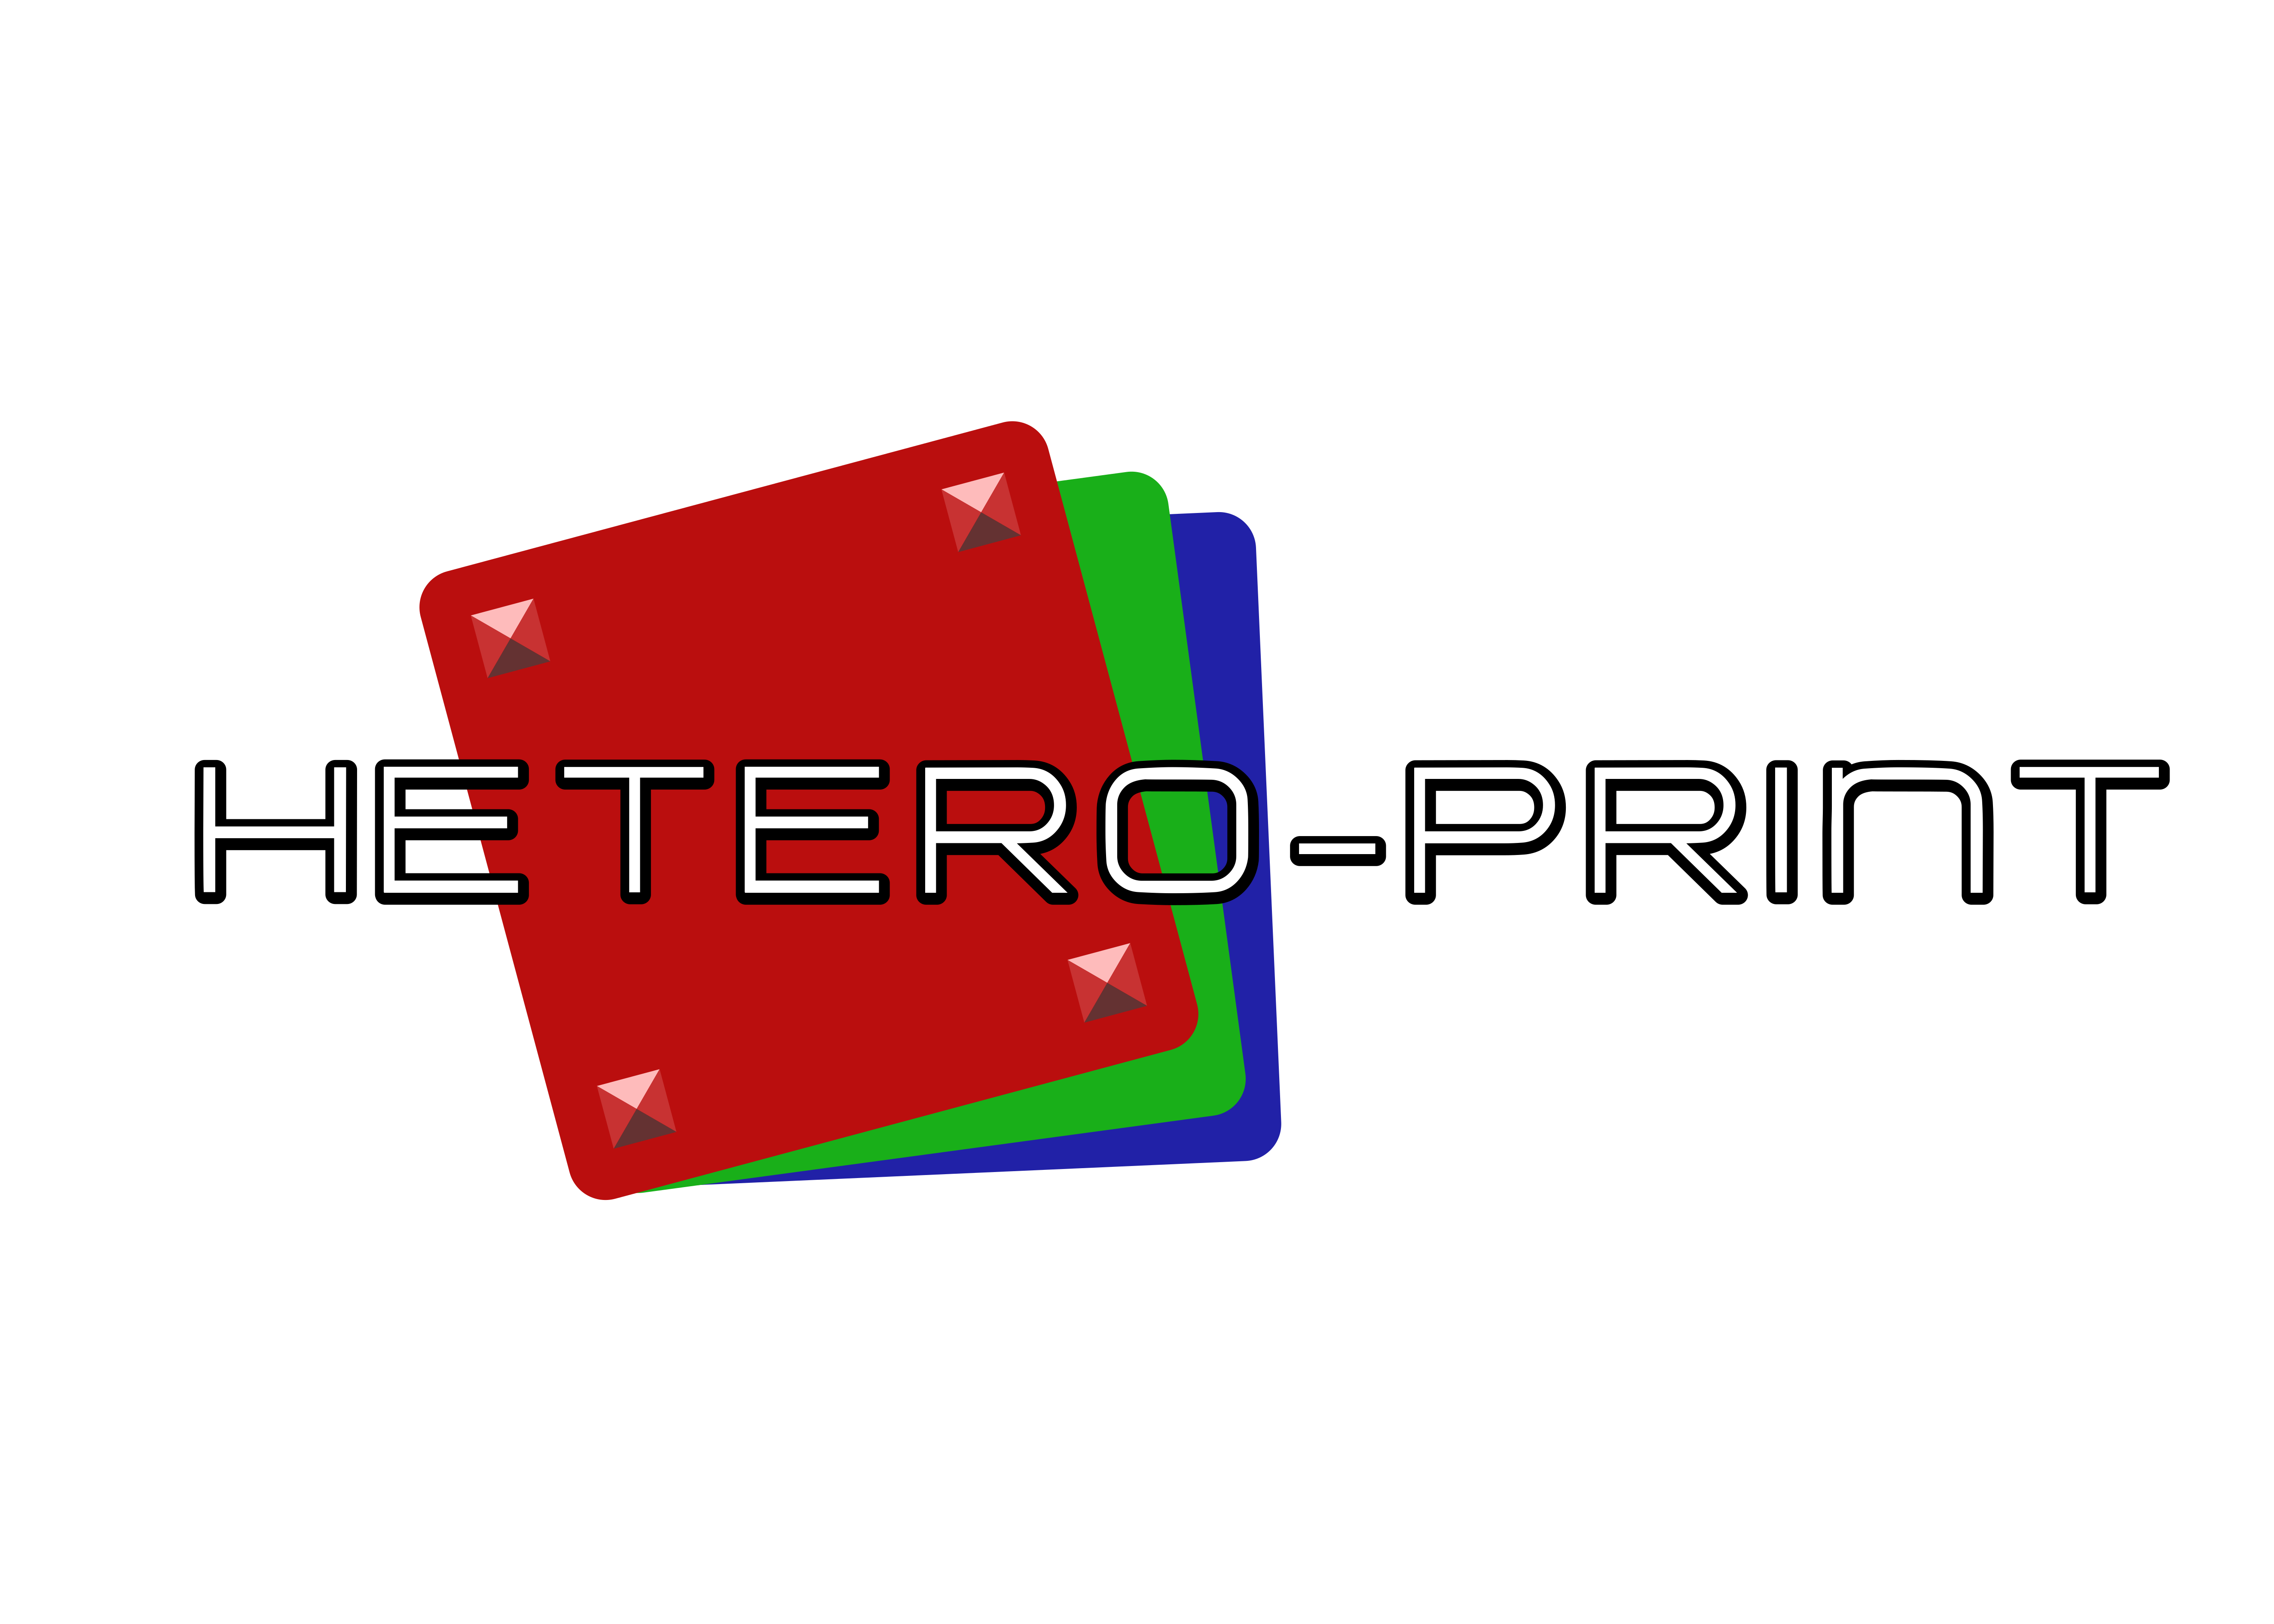 Hetero-print logo V2